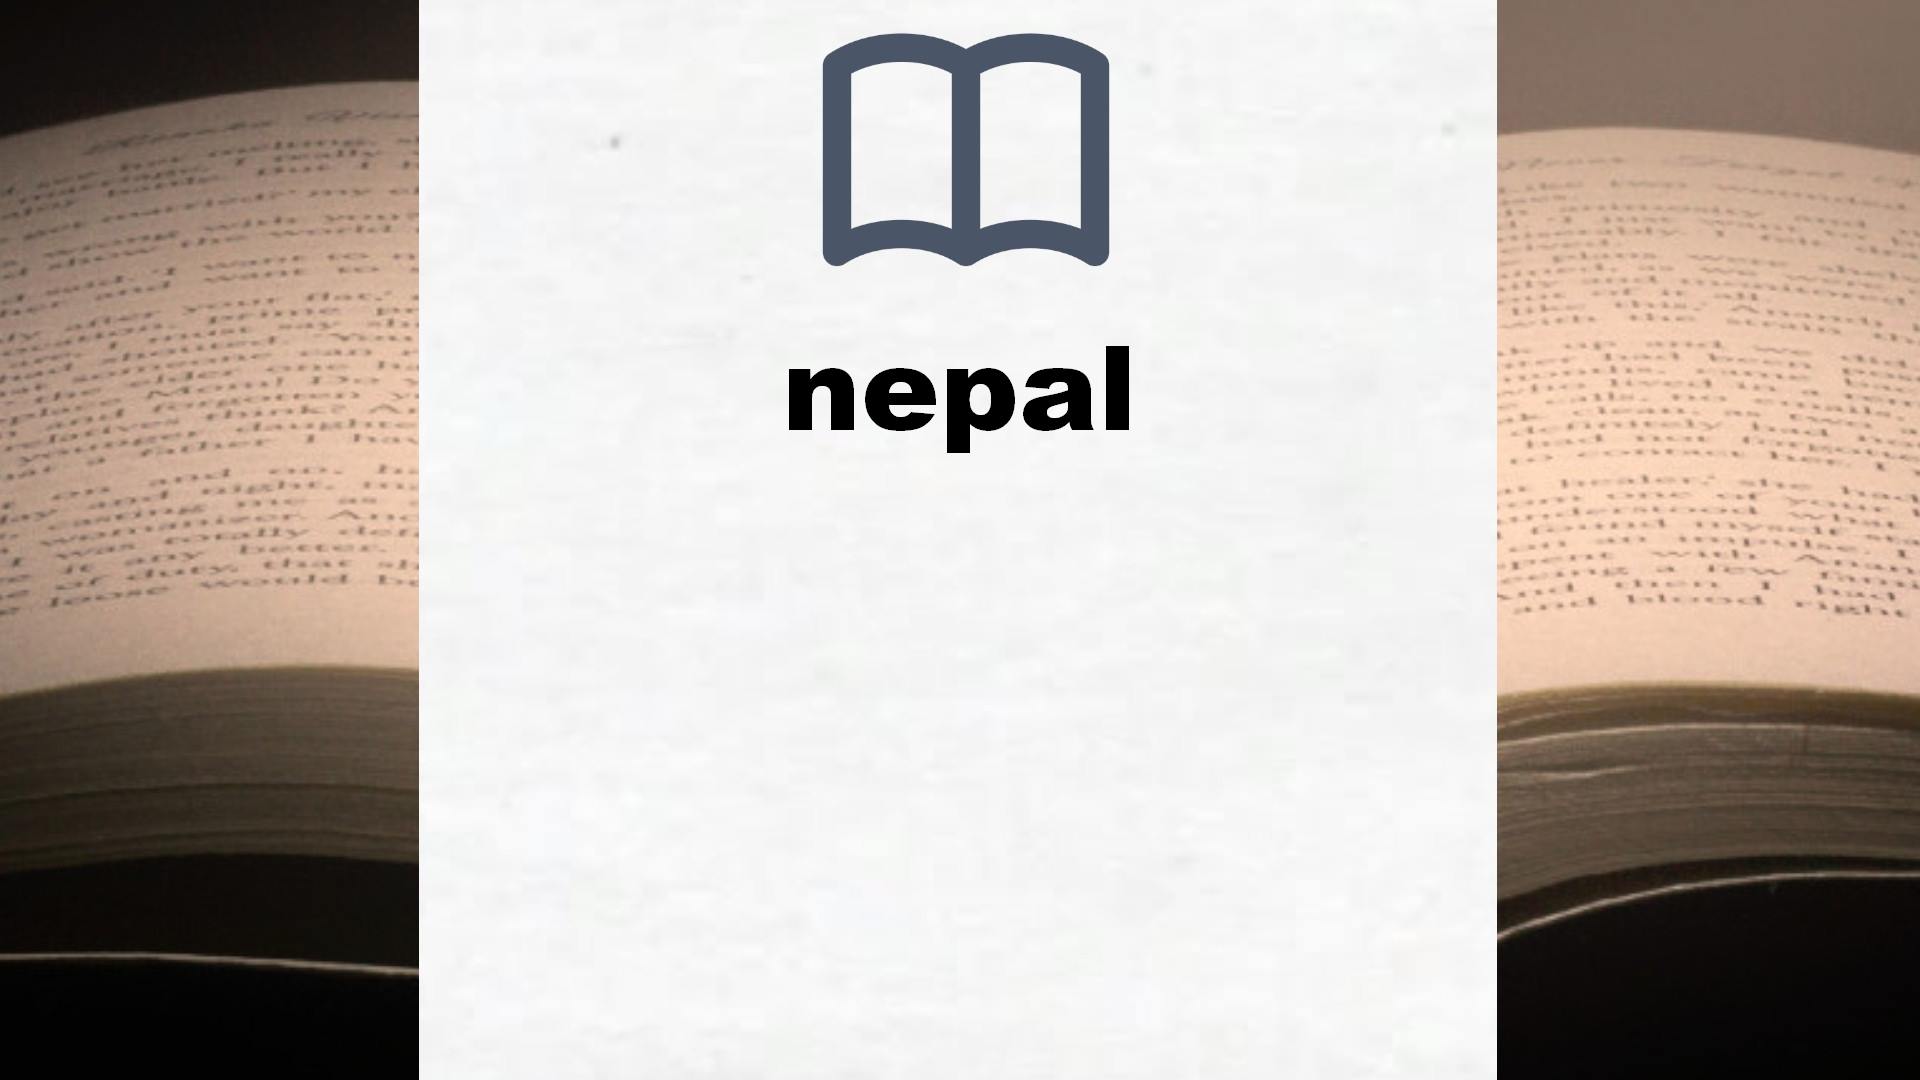 Libros sobre nepal